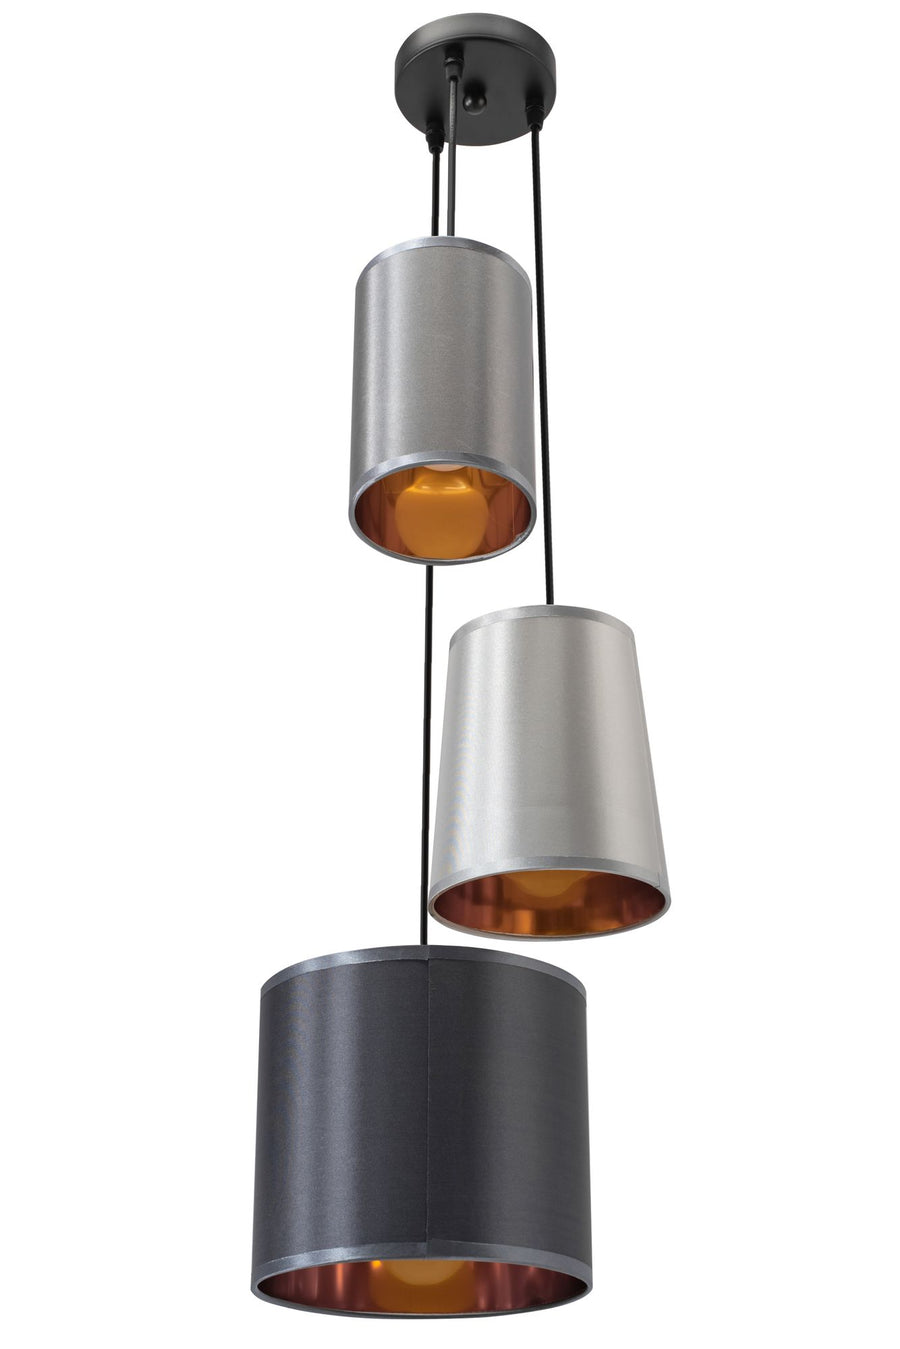 Lampa sufitowa nowoczesna APP971-3cp Mix kolorów